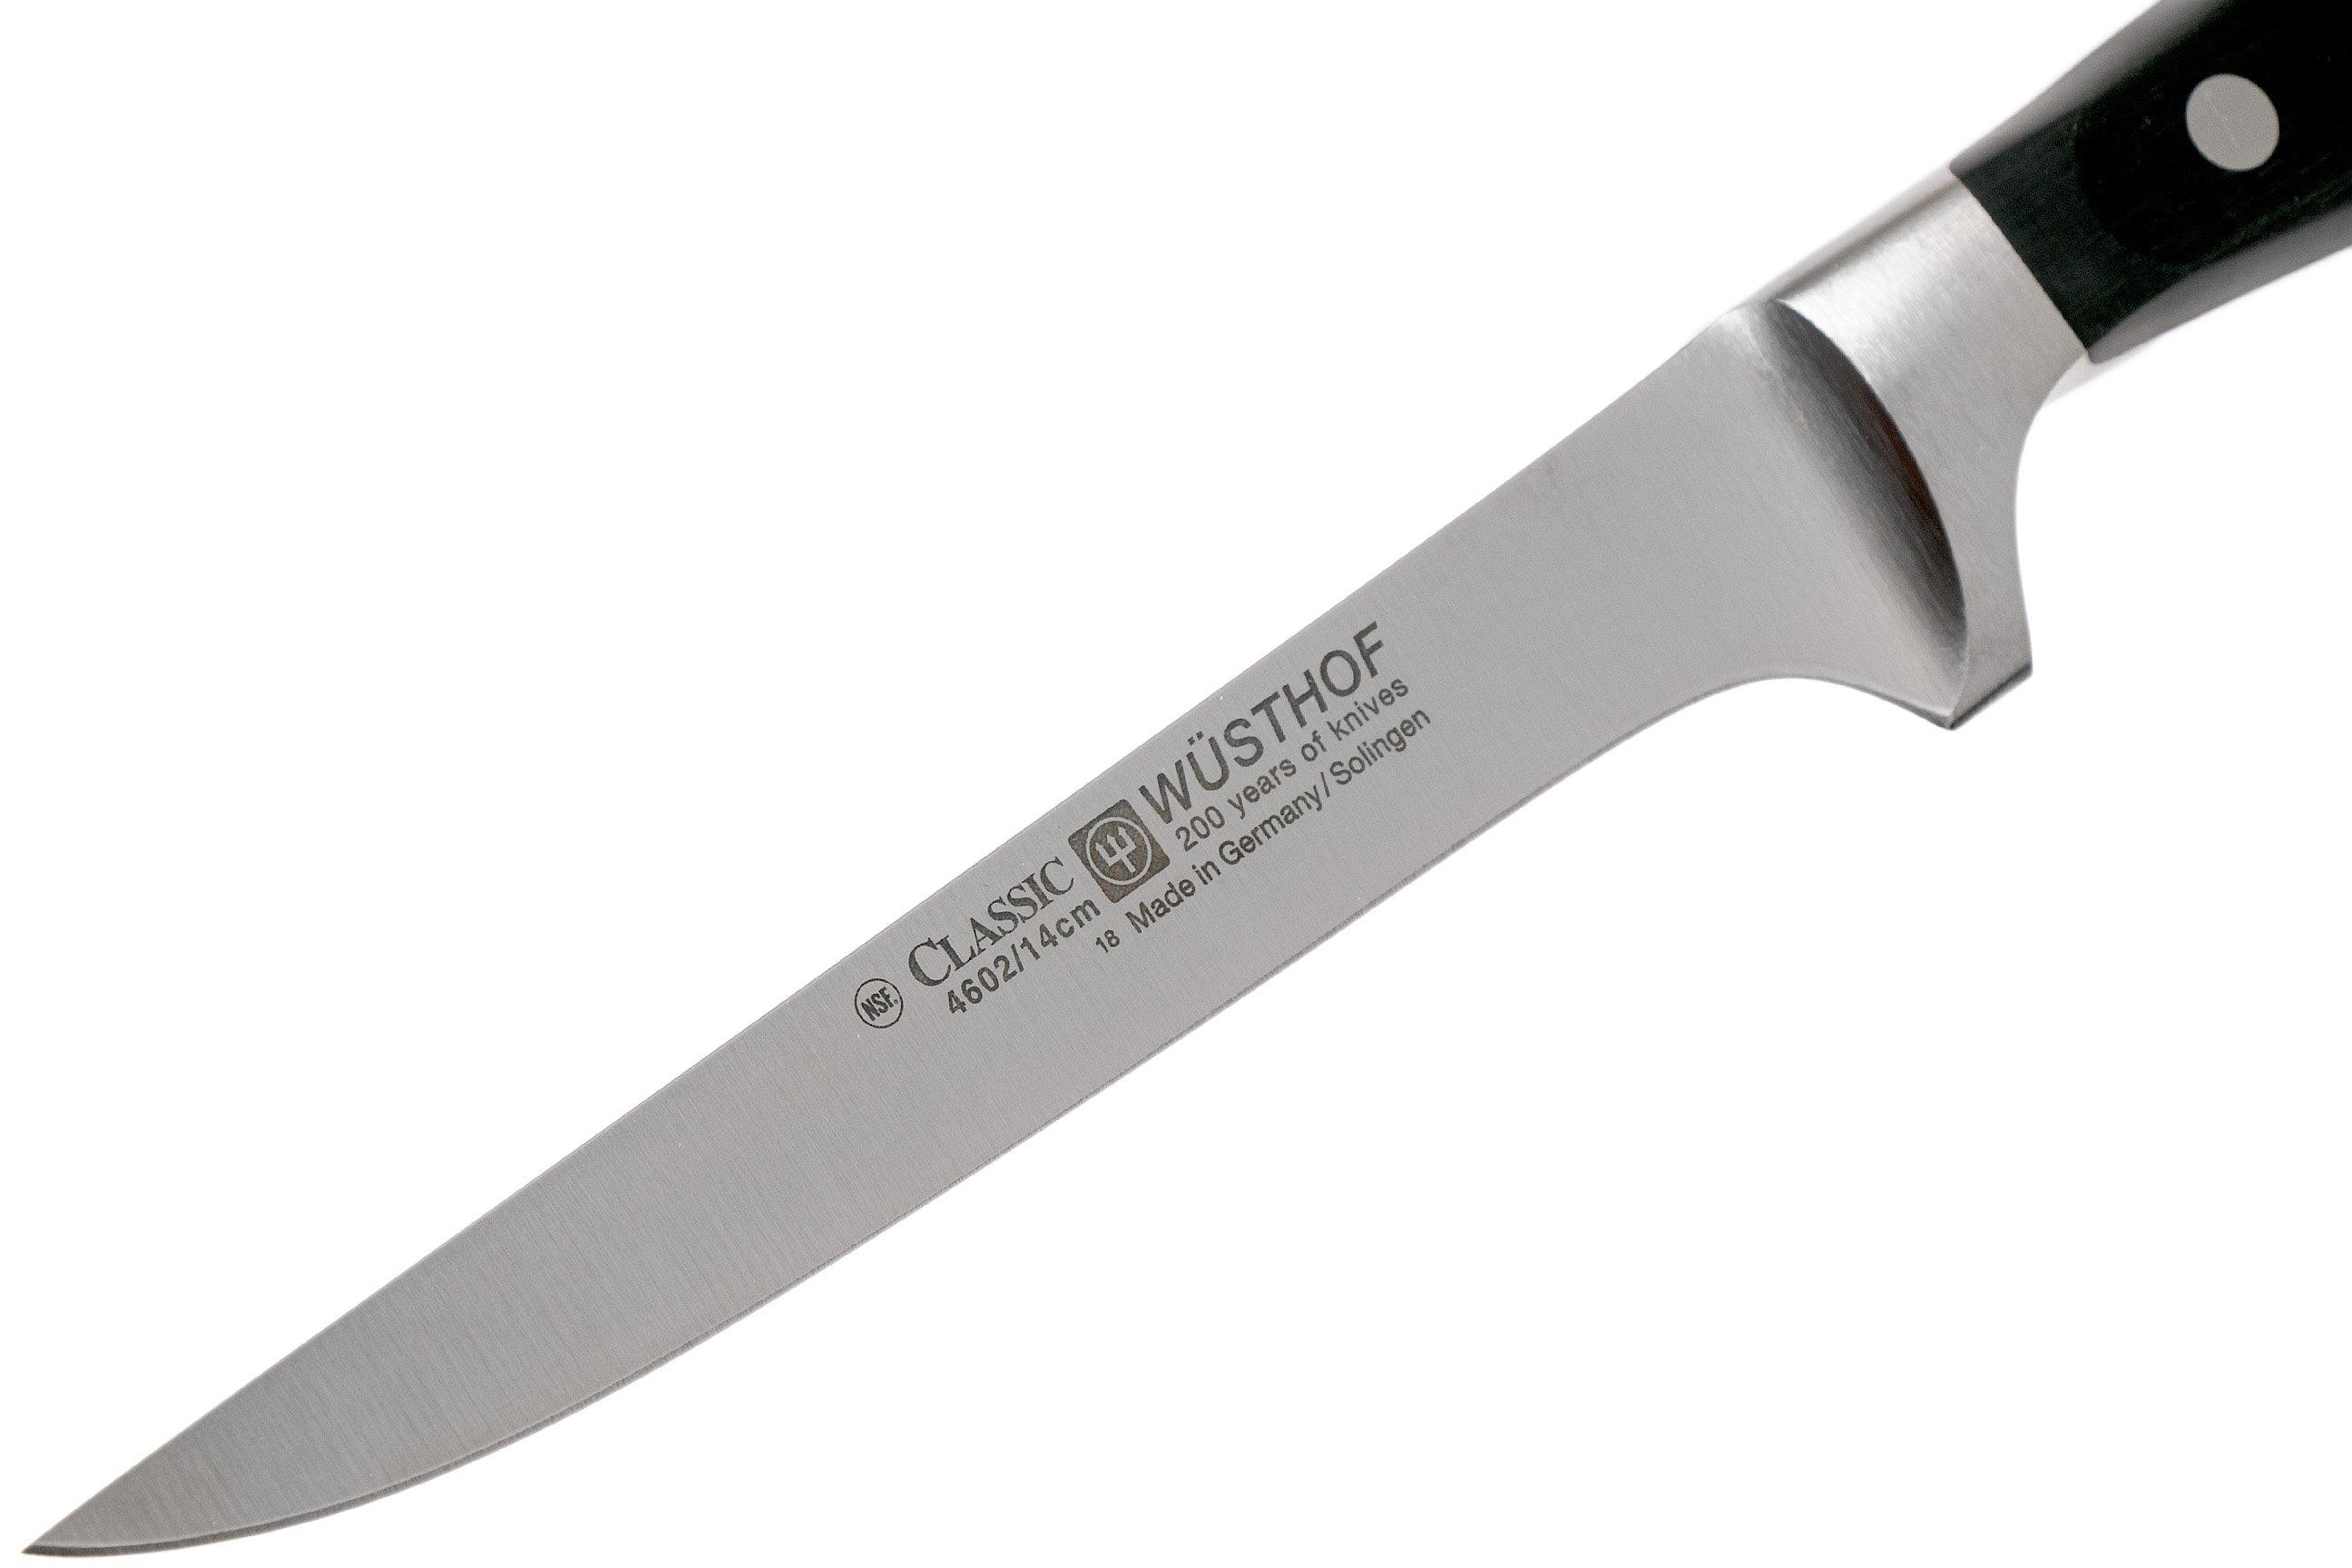 2 Stück Messerschärfer RÖR Carbide Keramik 2x Schärfer für alle gängigen Haushaltsmesser geeignet 